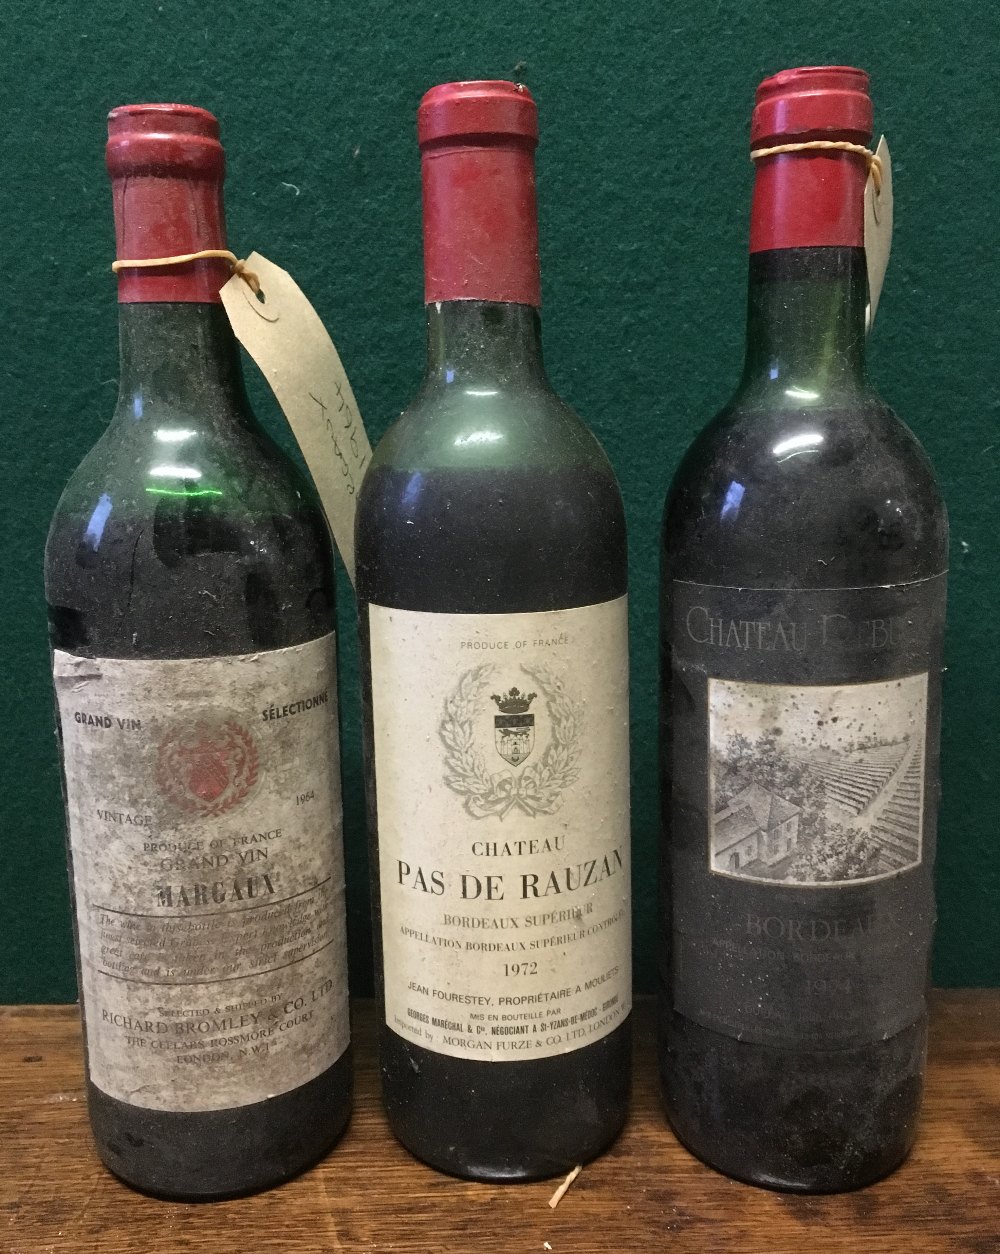 Chateau Pas de Rauzan Bordeaux Superieur 1972 Single bottle;